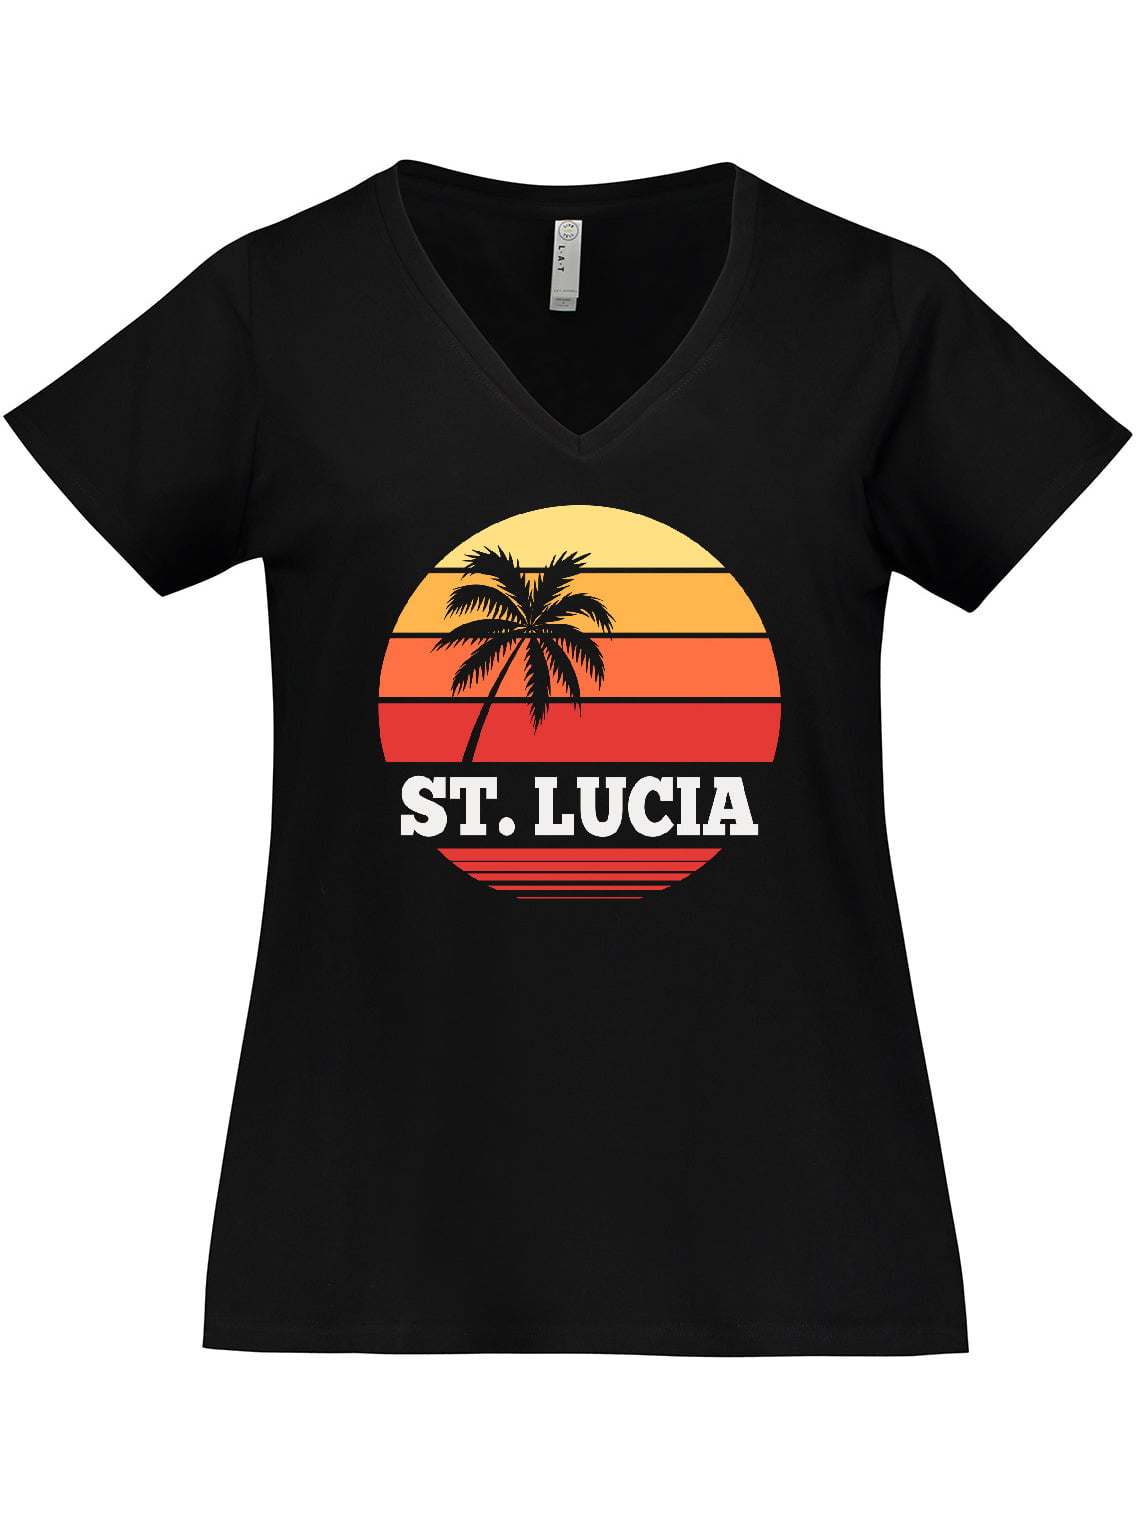 St Lucia Souvenirs, St Lucia Shirt, St Lucia Gift, St Lucia Vacation, I Love St Lucia, St Lucia Tshirt, St Lucia Clothing, St Lucia T Shirt